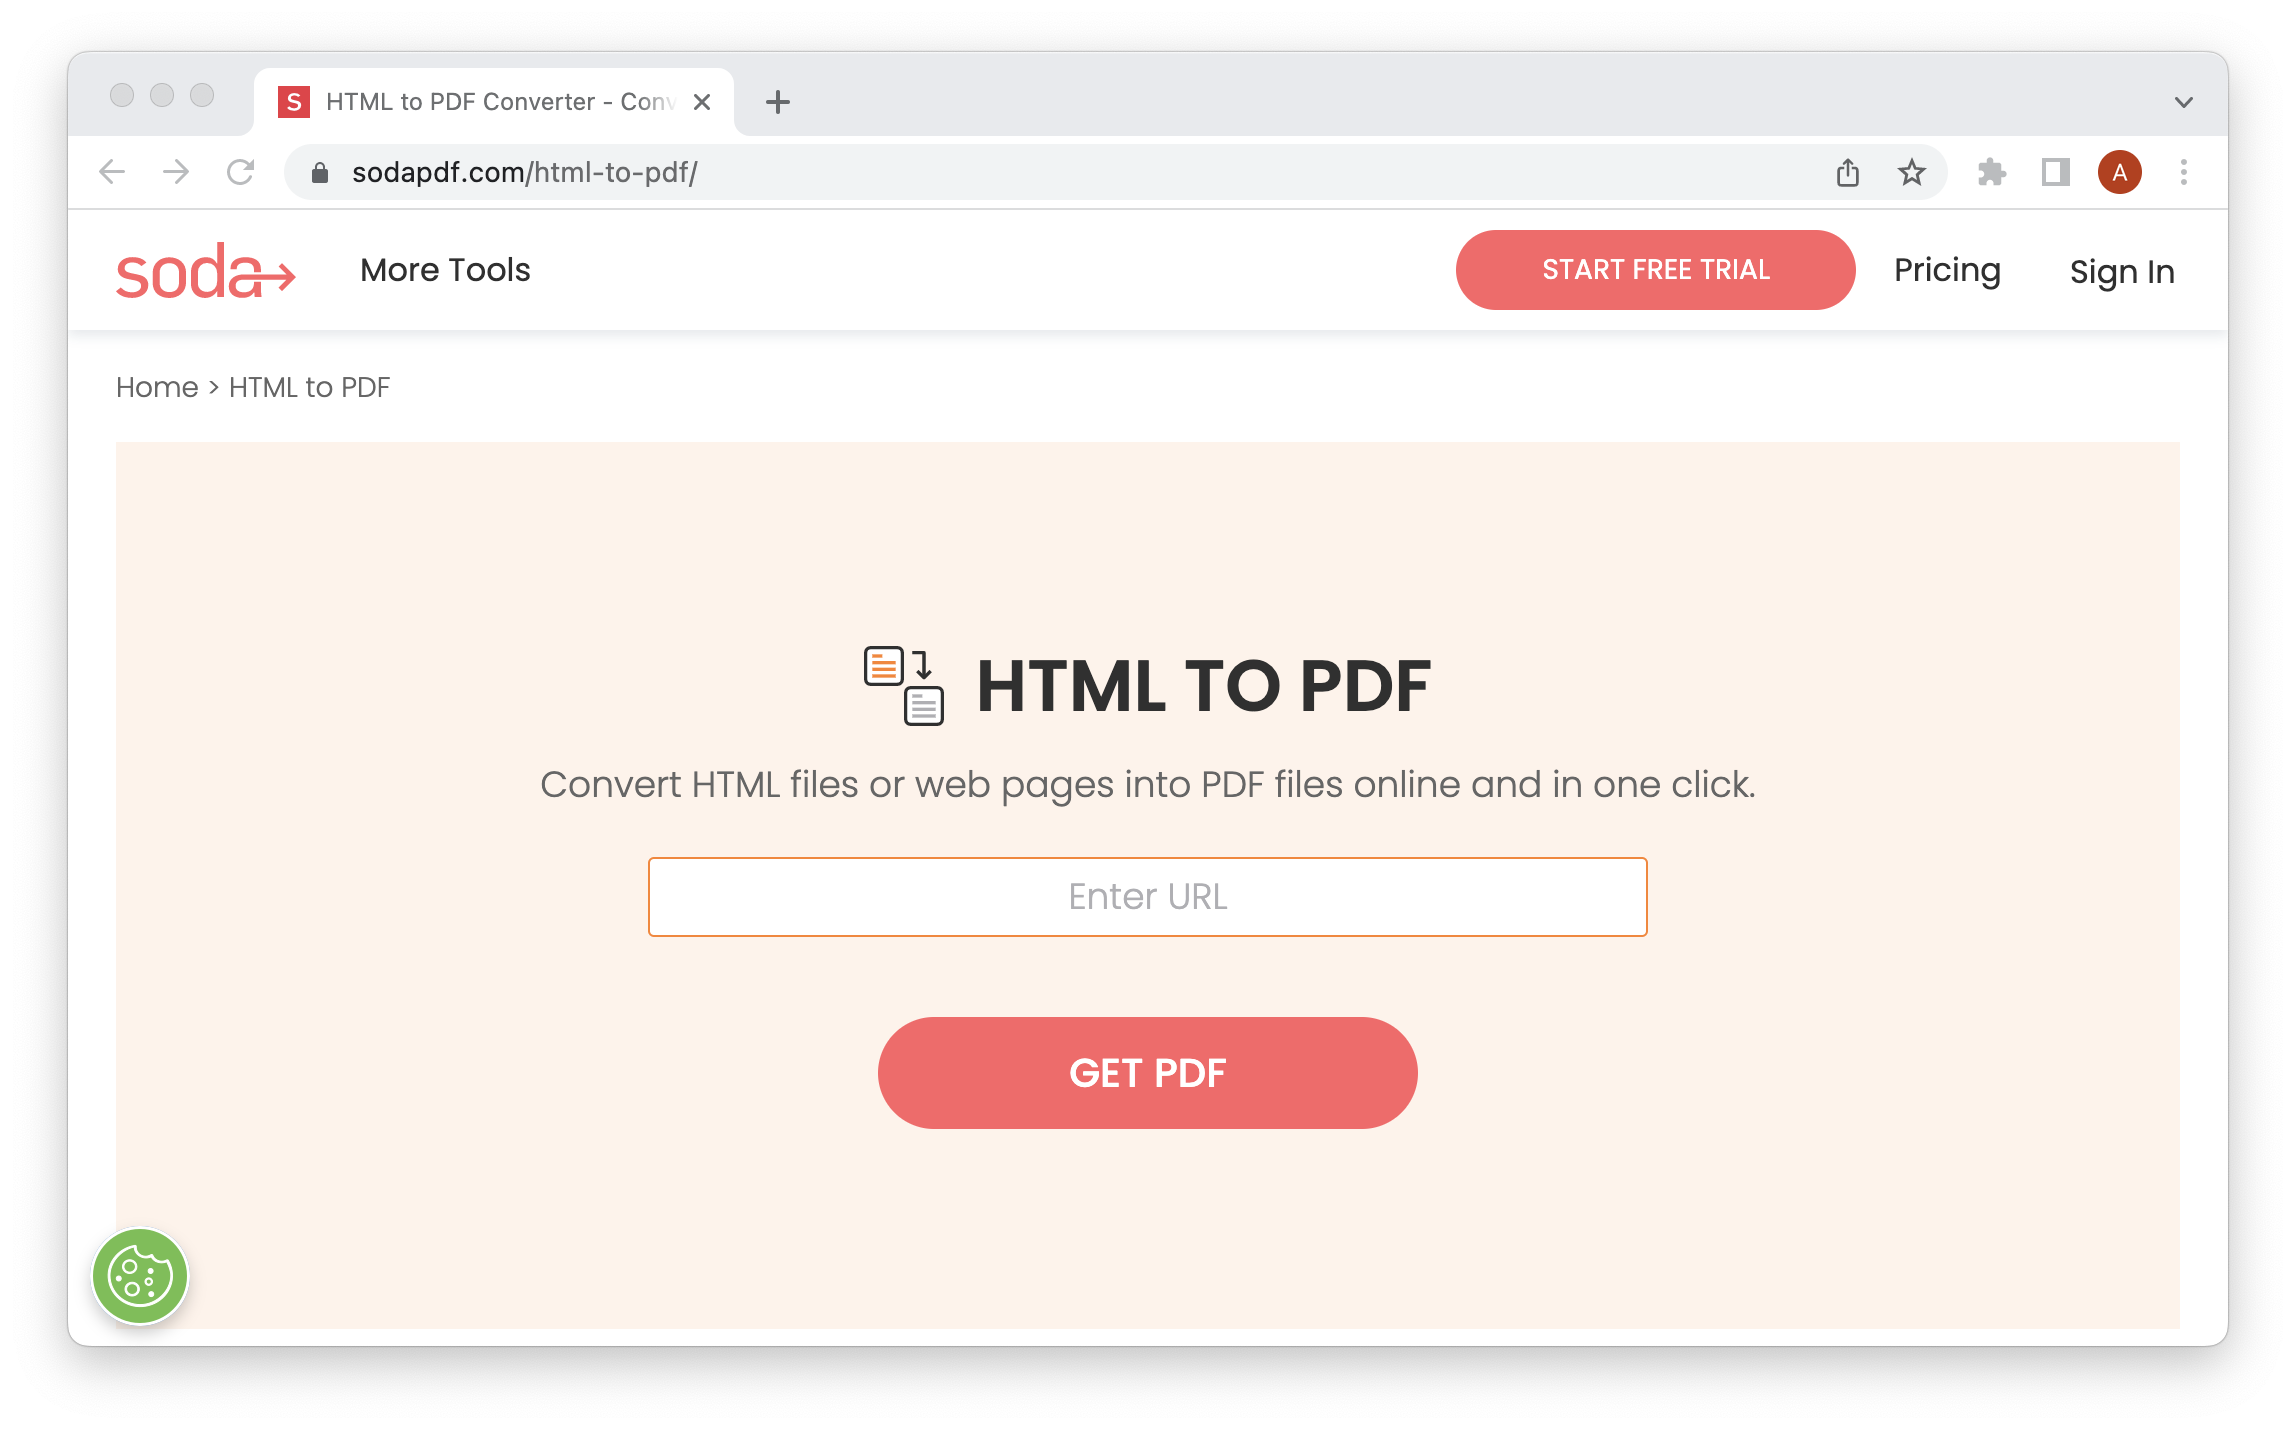 SodaPDF to przykładowy konwerter HTML do PDF